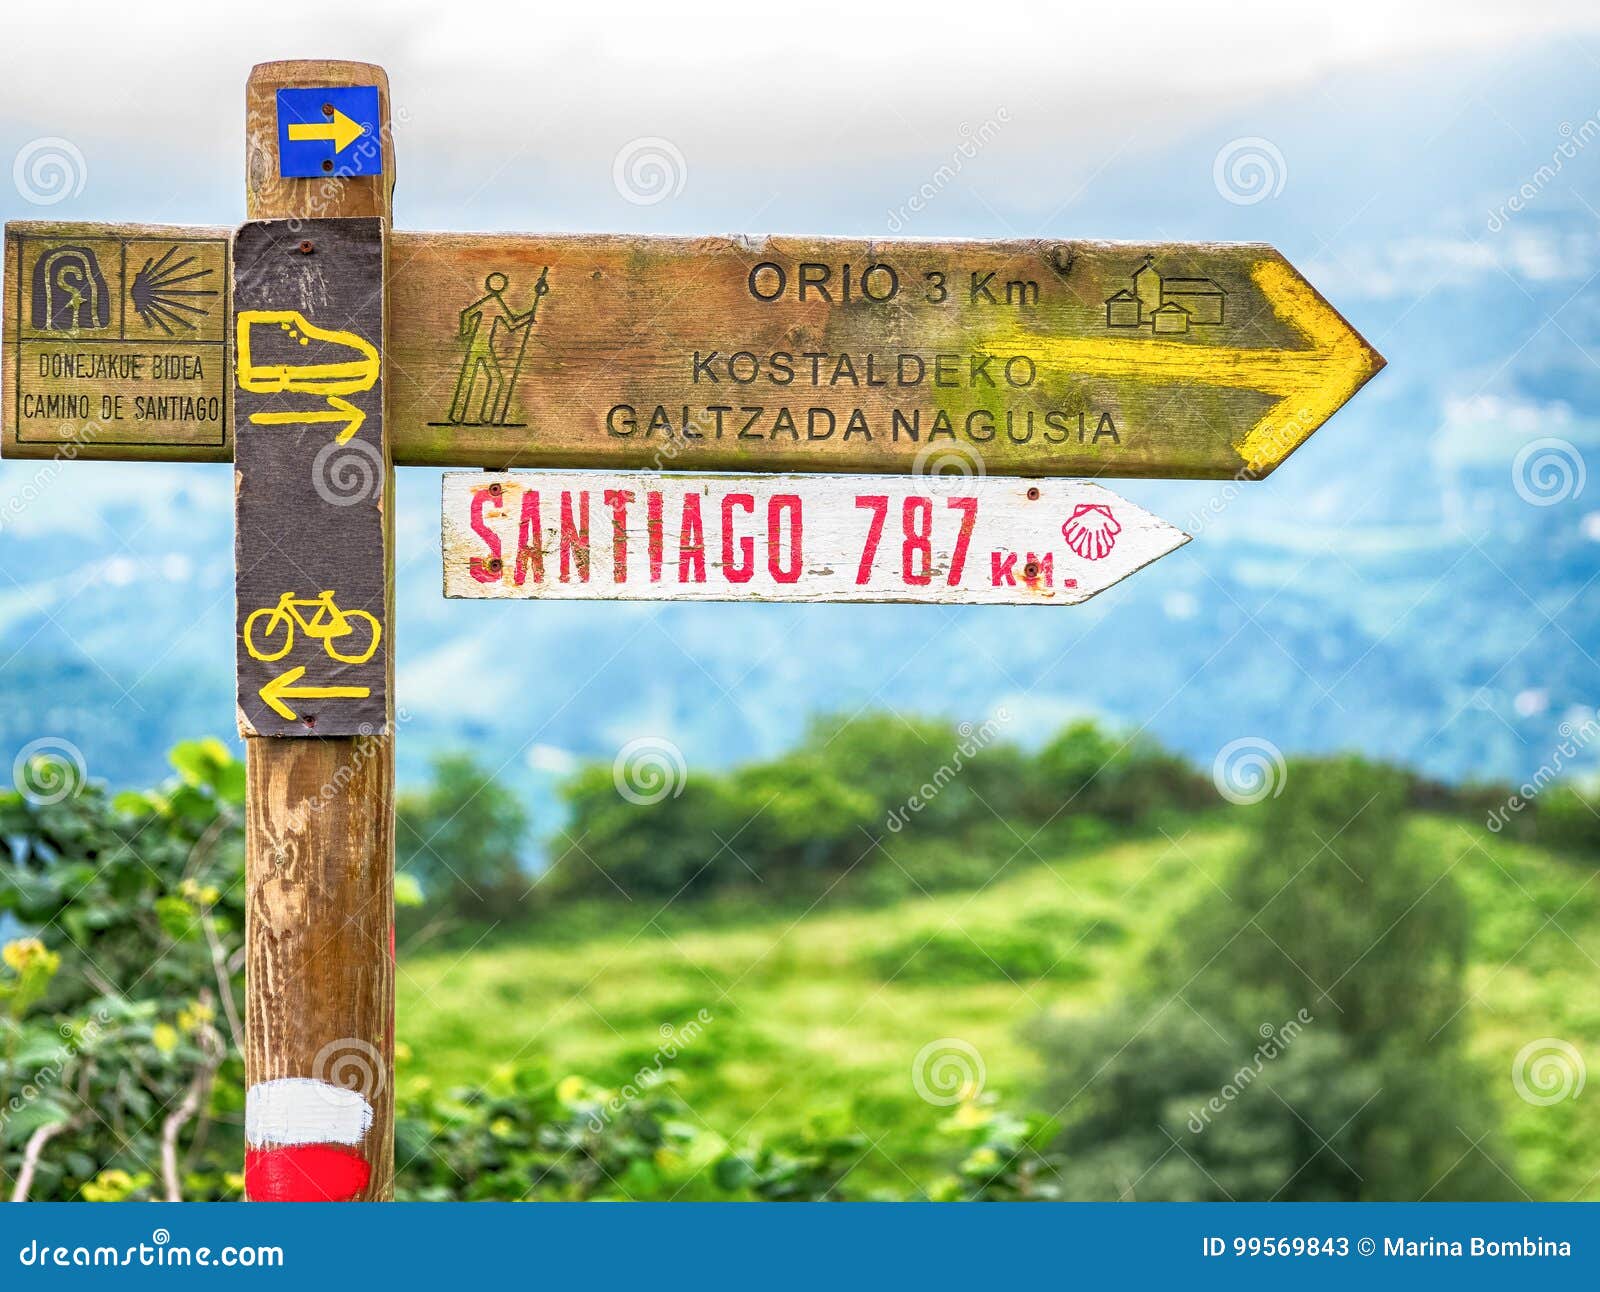 signs on camino de santiago